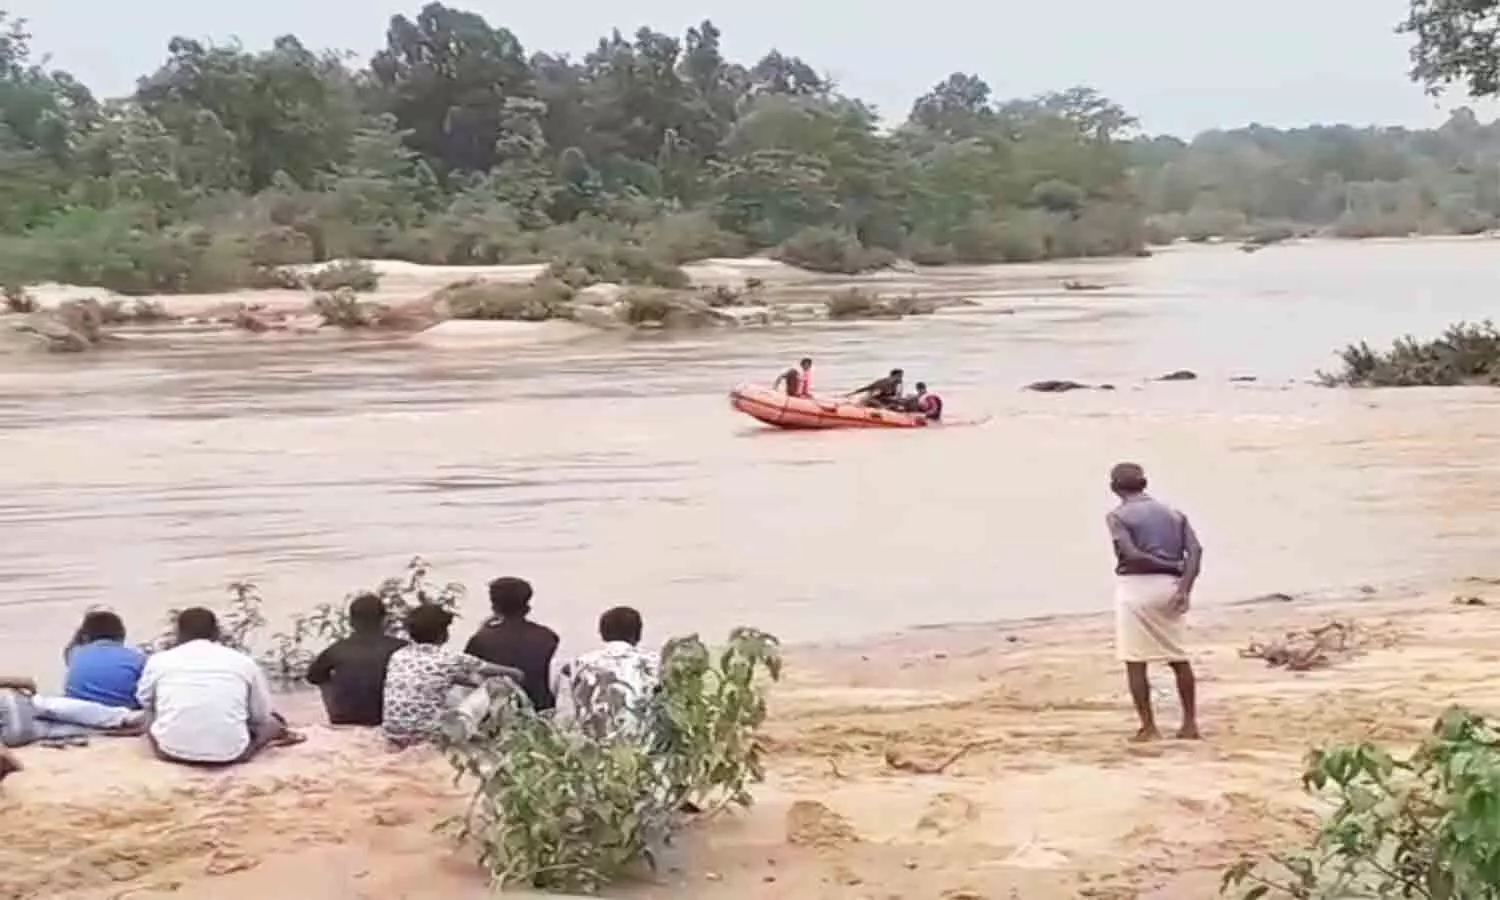 एमपी शहडोल की बनास नदी में बह गए 6 युवक, सर्चिंग में जुटी एनडीआरएफ की टीम